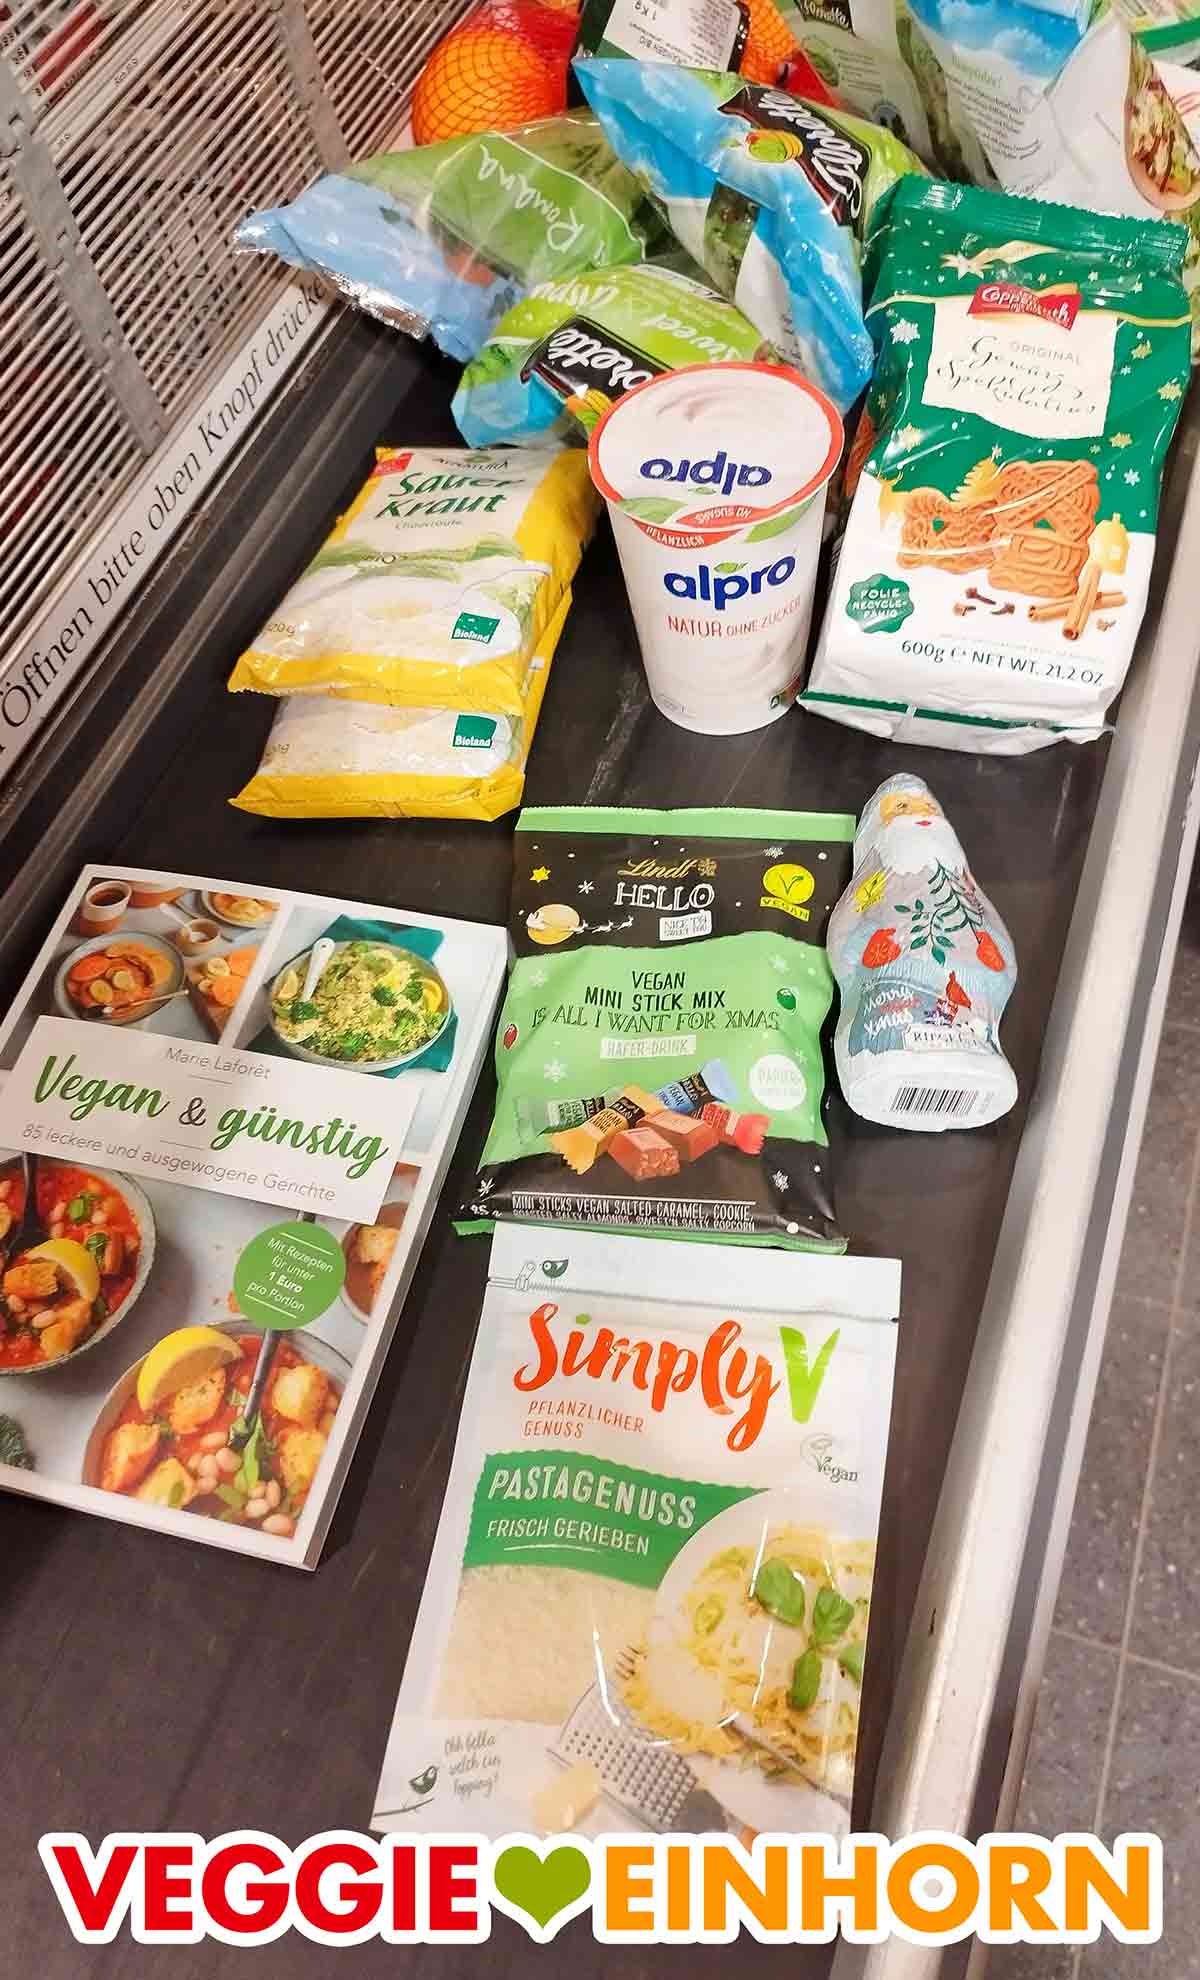 Veganer Riegelein Weihnachtsmann und andere vegane Produkte auf dem Kassenband im Supermarkt